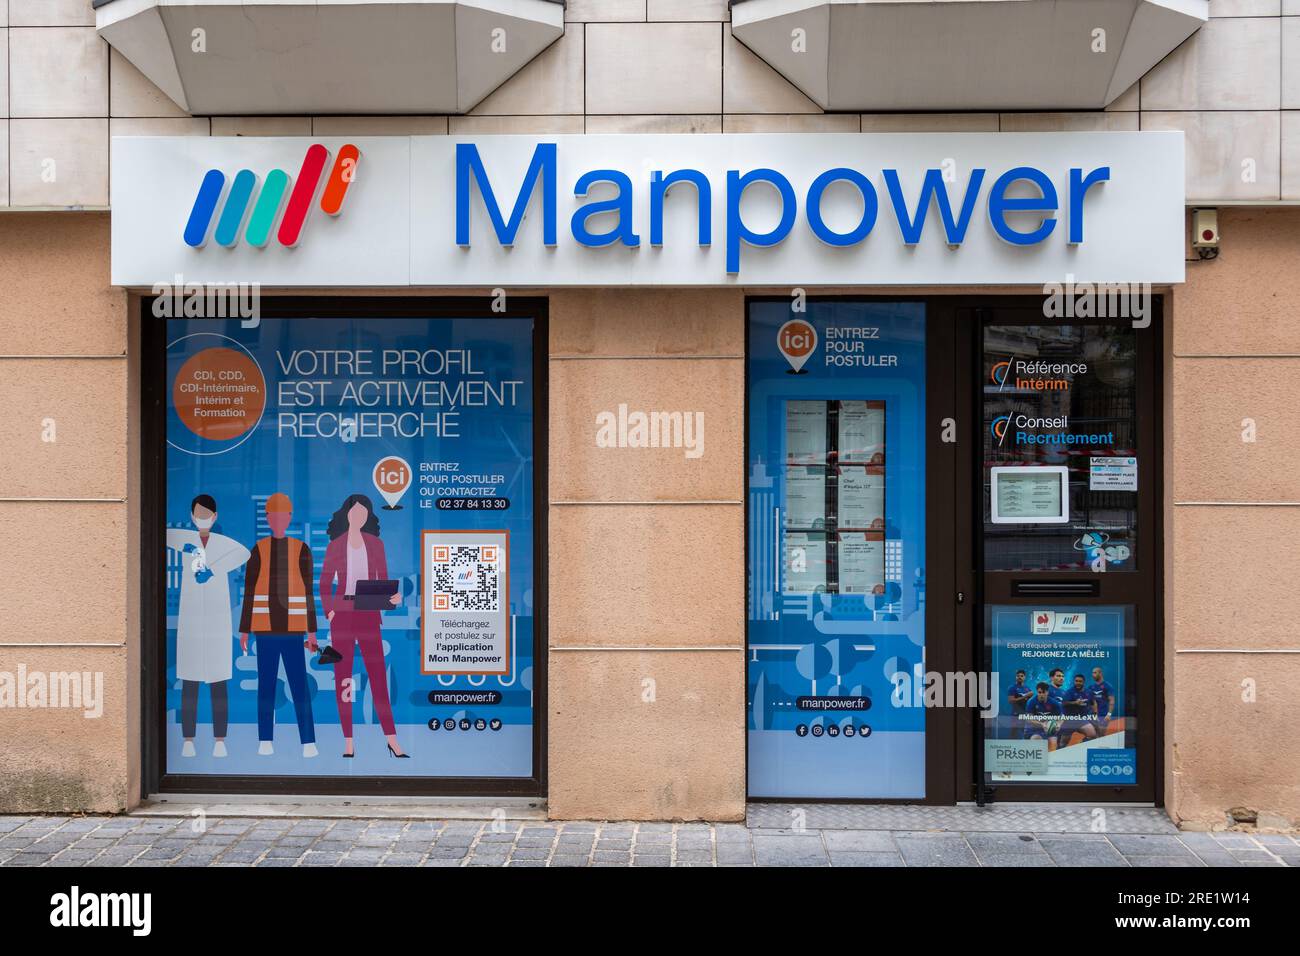 Vue extérieure d'un bureau de Manpower. Manpower est une marque de la multinationale ManpowerGroup, spécialisée dans les ressources humaines et le travail temporaire Banque D'Images